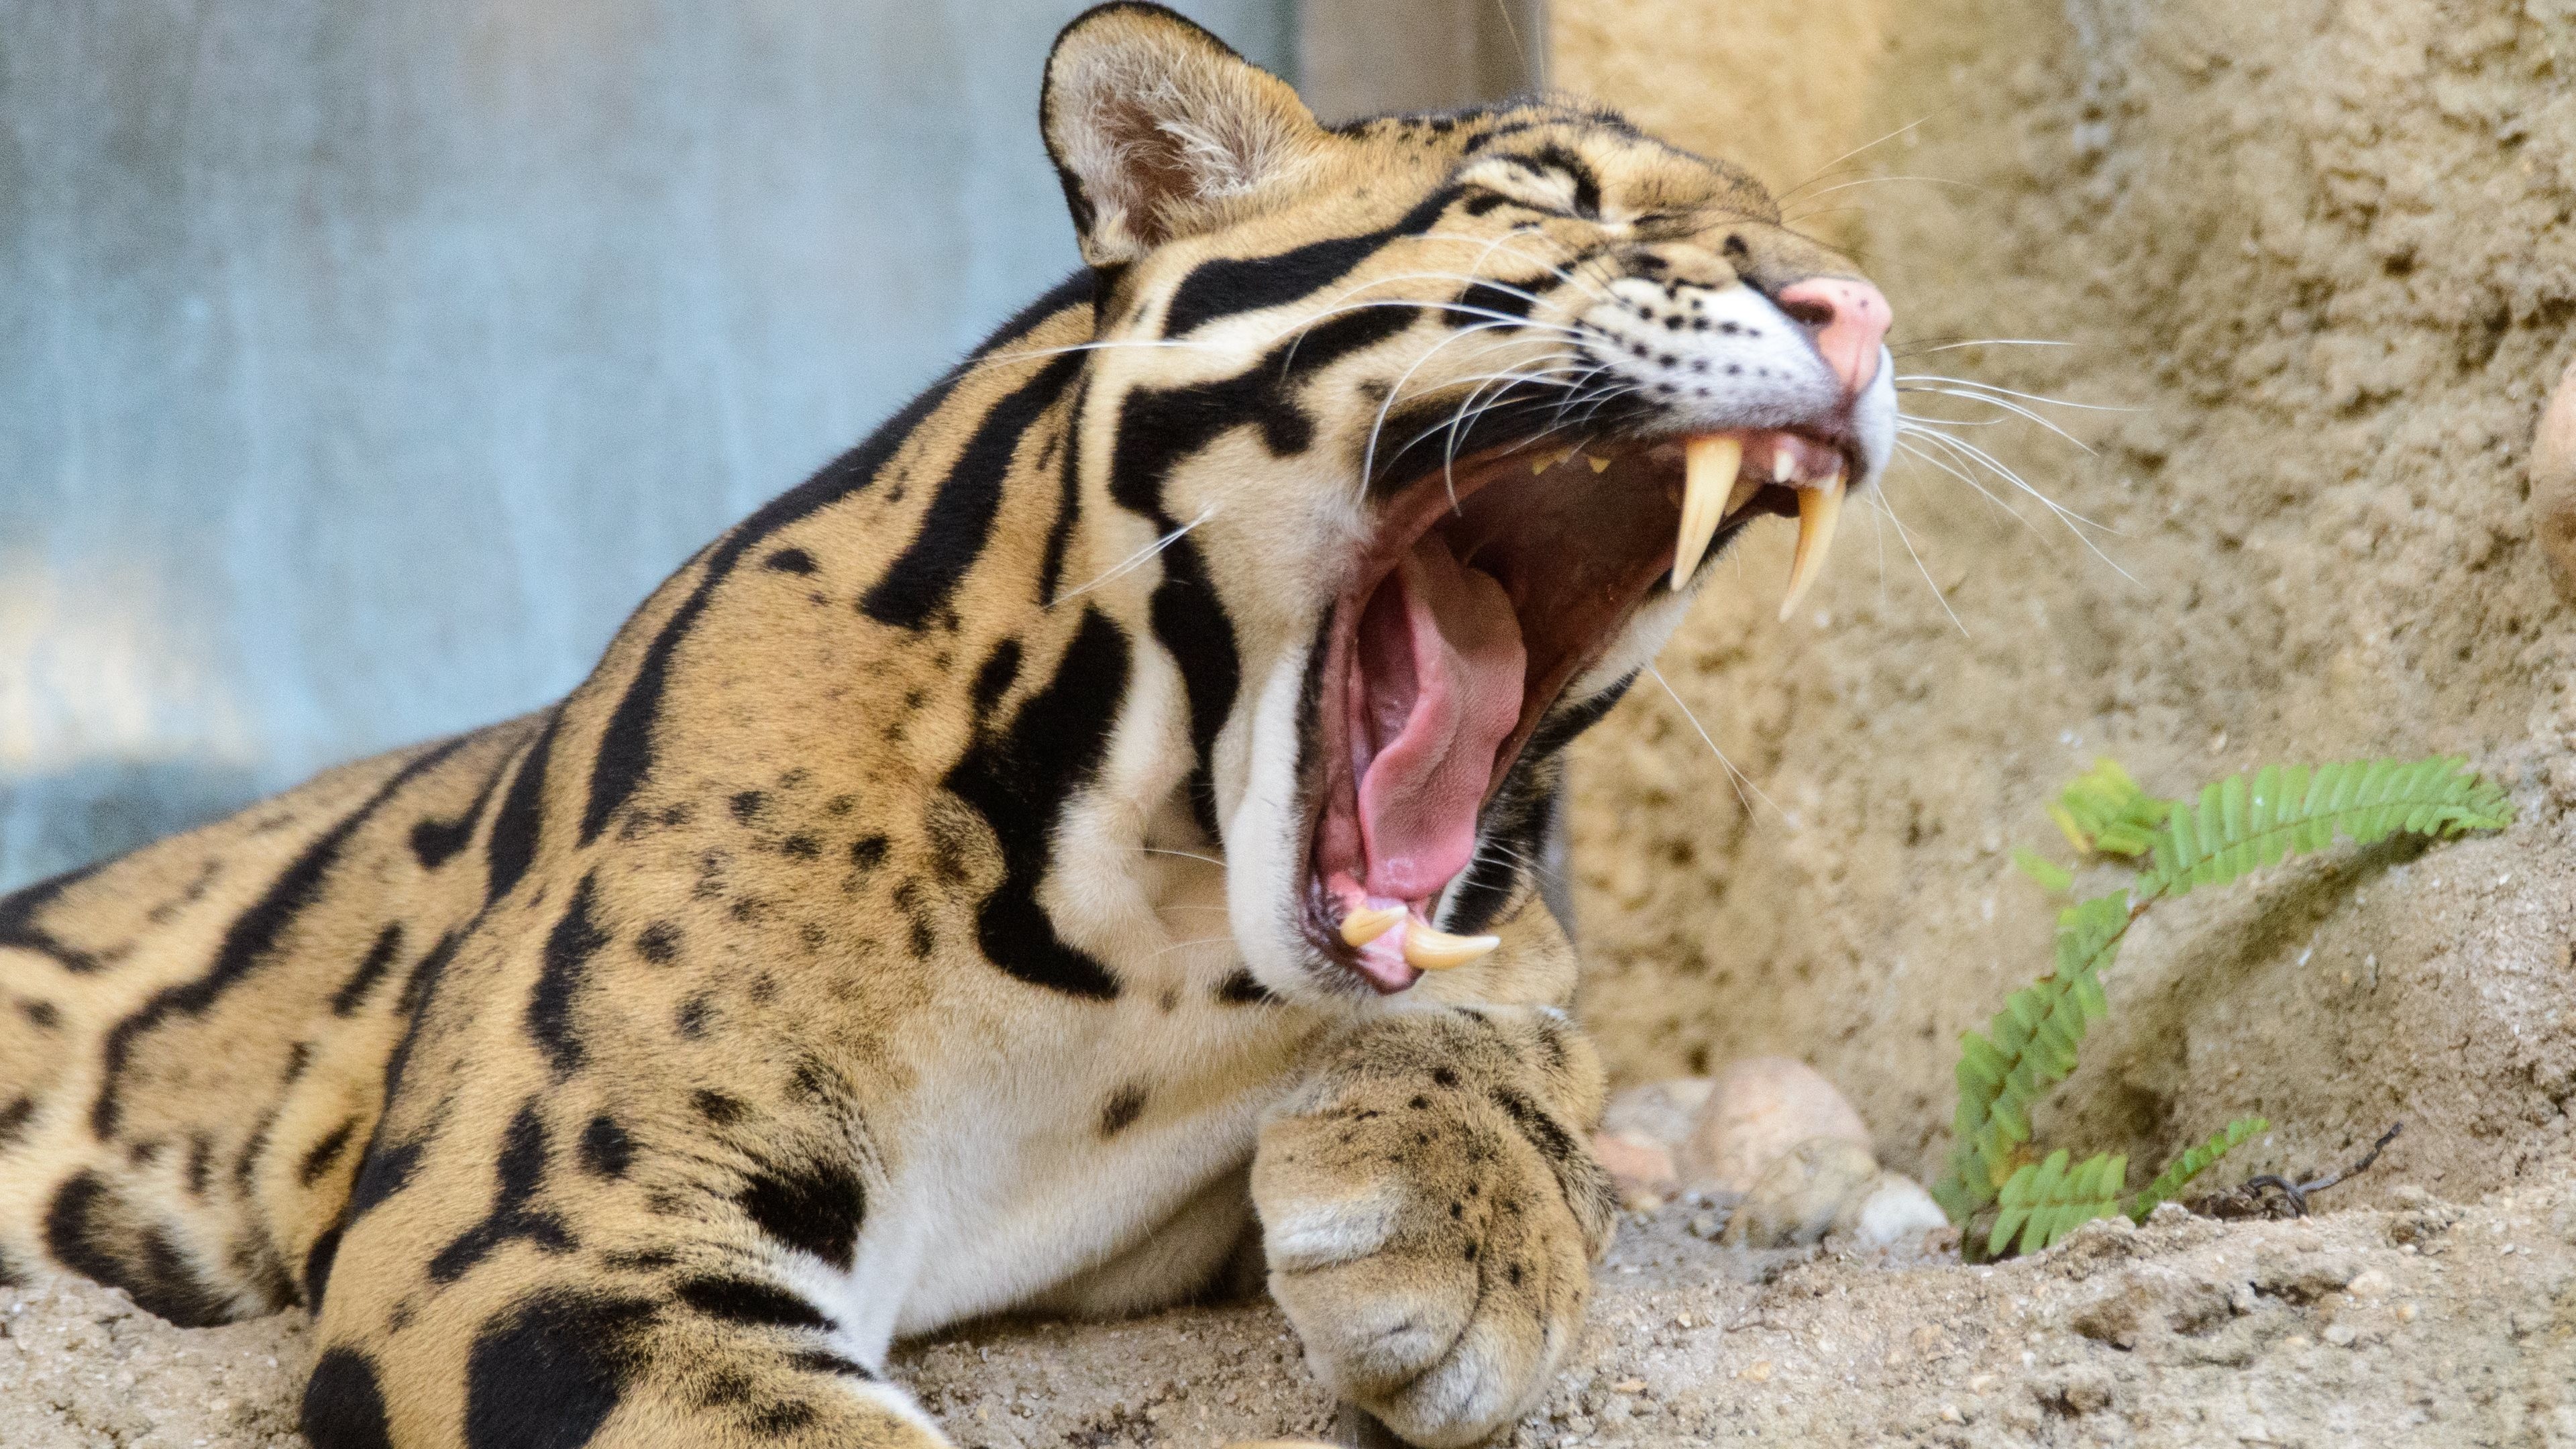 Snow Leopard - Ultra Hd 4k Animal , HD Wallpaper & Backgrounds